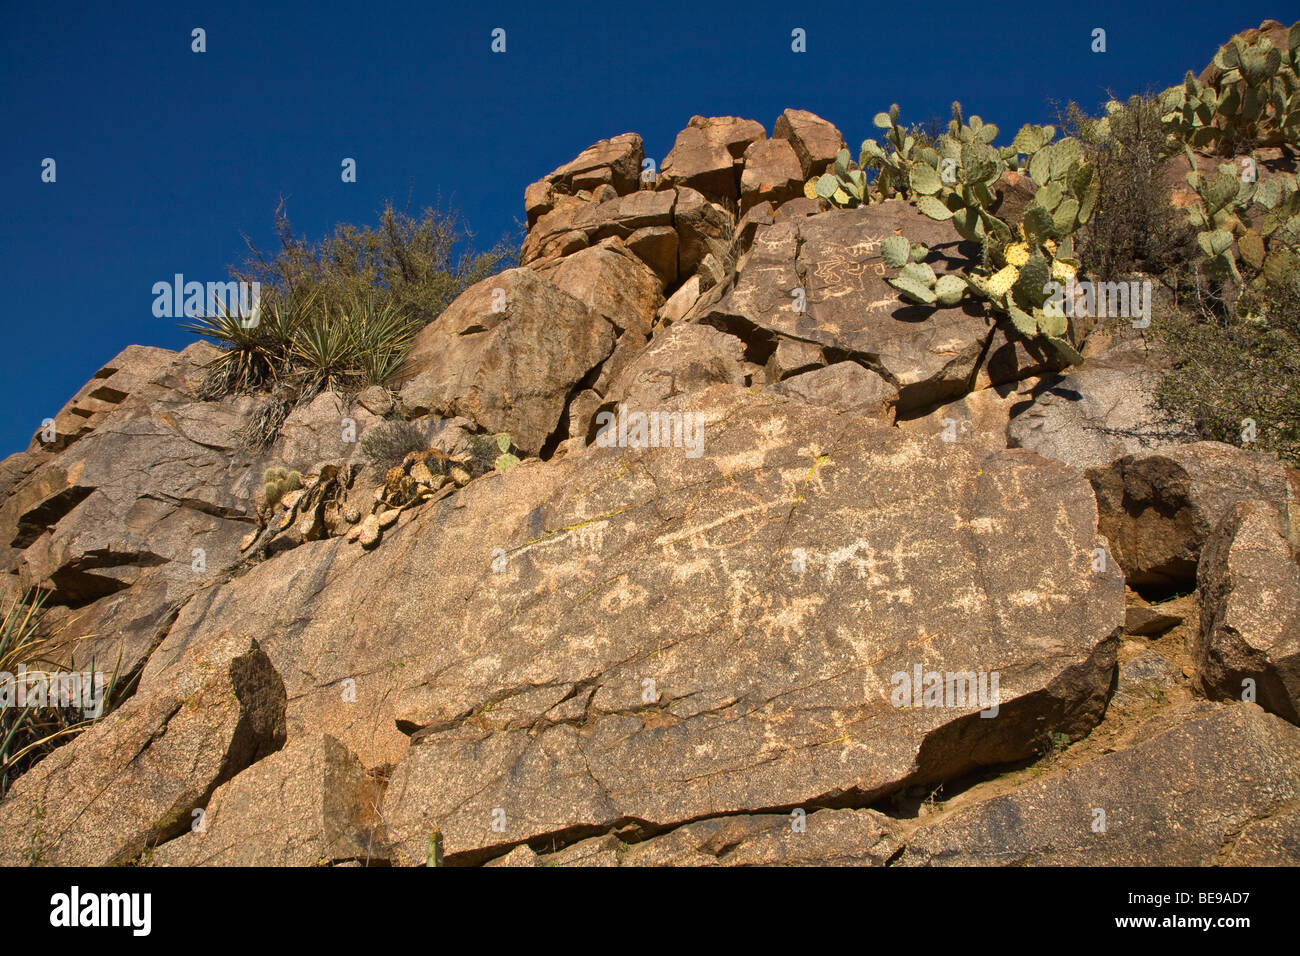 Alte indianische Felszeichnungen auf Felsen entlang Badger Federn waschen bei Agua Fria National Monument, Arizona, BEAN AL Pix 0285 Stockfoto